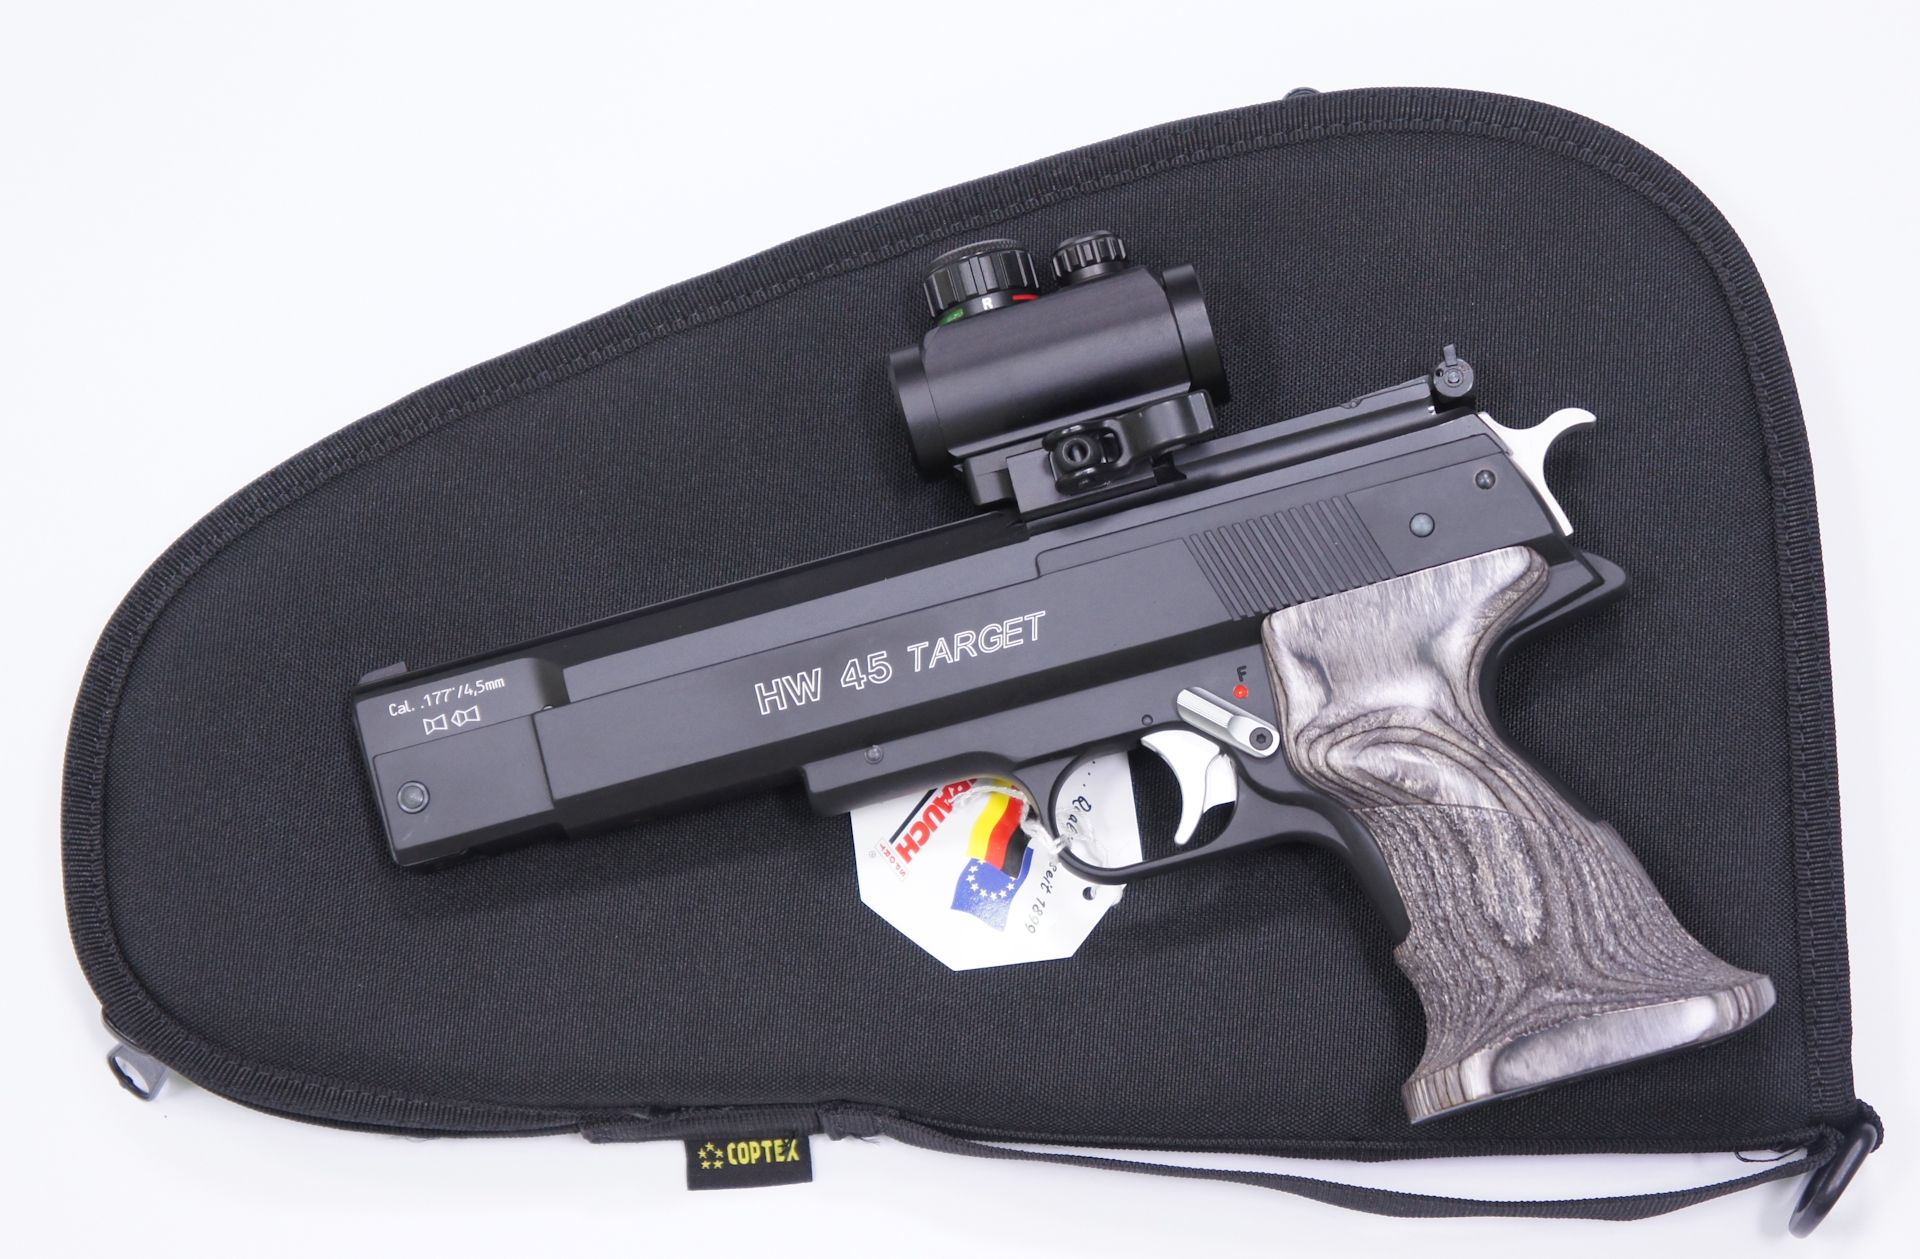 Als Zubehör für die HW 45 Target RTU mit aufgesetzter Optik kann ich Ihnen <a href=1340088.htm> solche praktische Pistolentasche </a> für Aufbewahrung und Transport anbieten. Die Tasche wäre mittels Vorhängeschloss abschließbar.